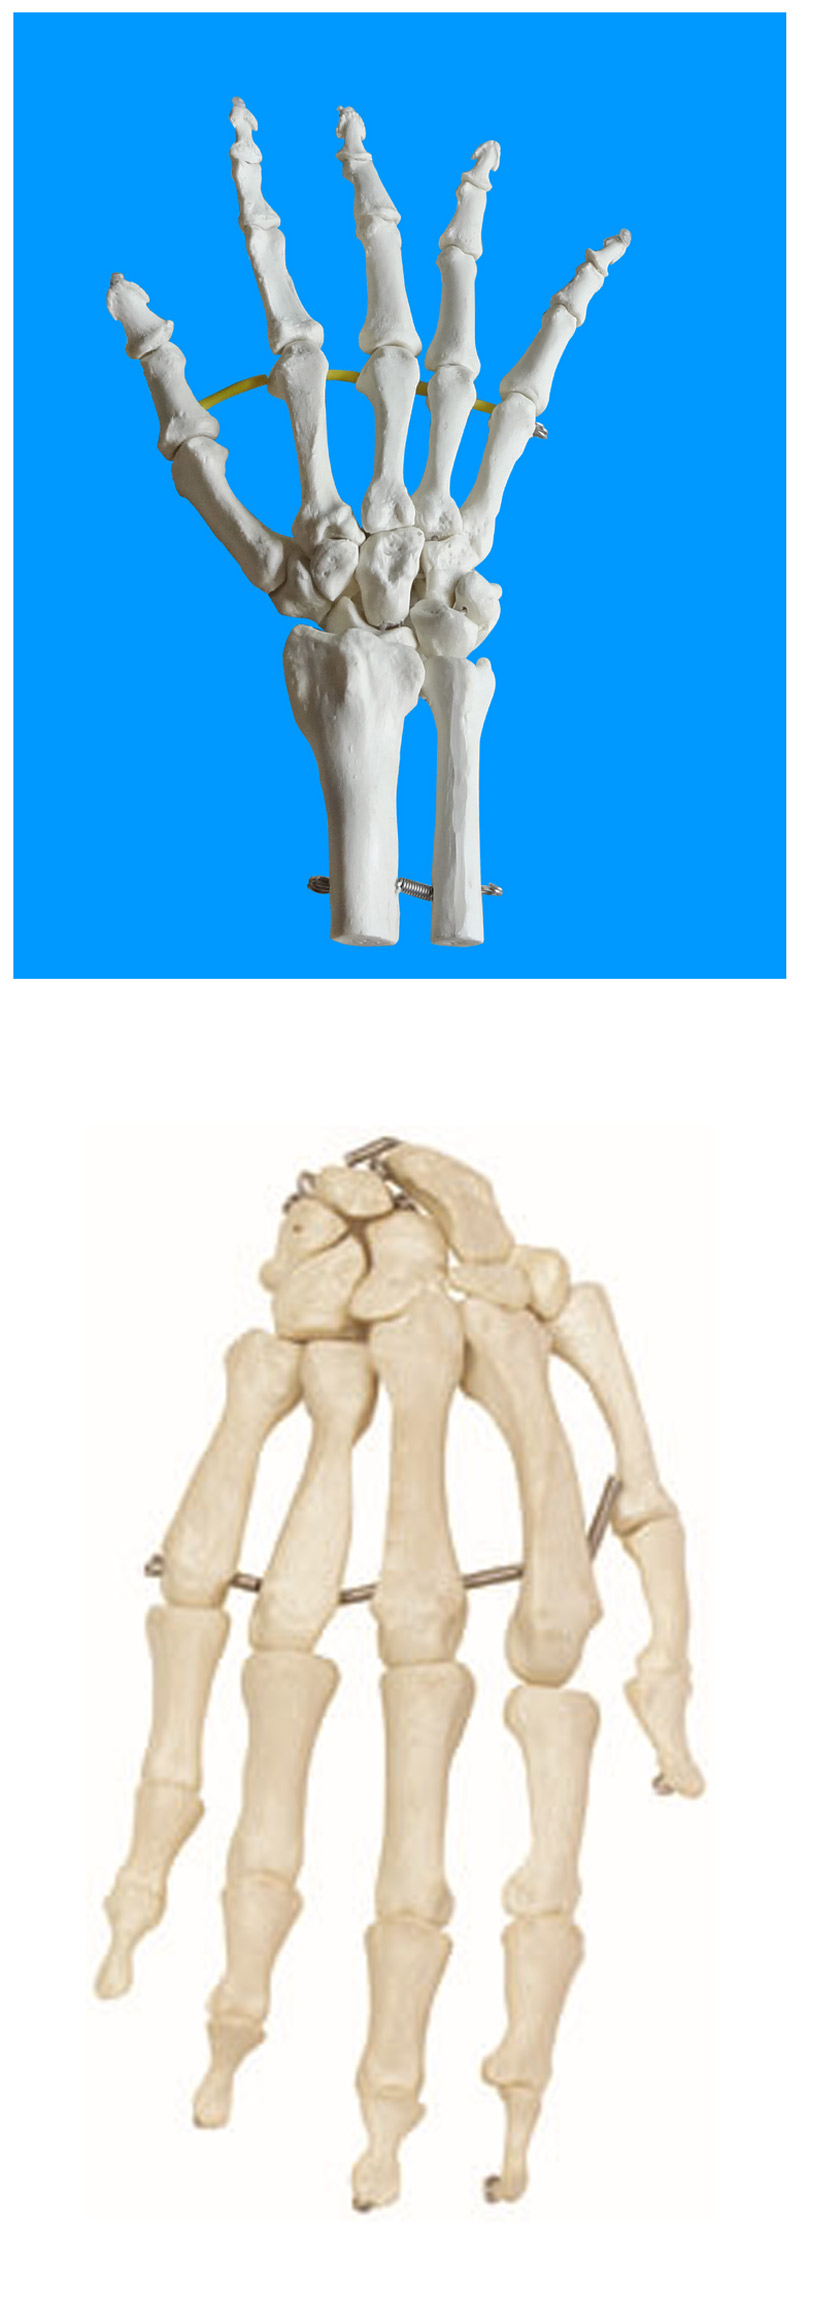 王太医 手关节模型 手掌骨骼模型 标配 手骨:包括腕骨,掌骨和指骨.